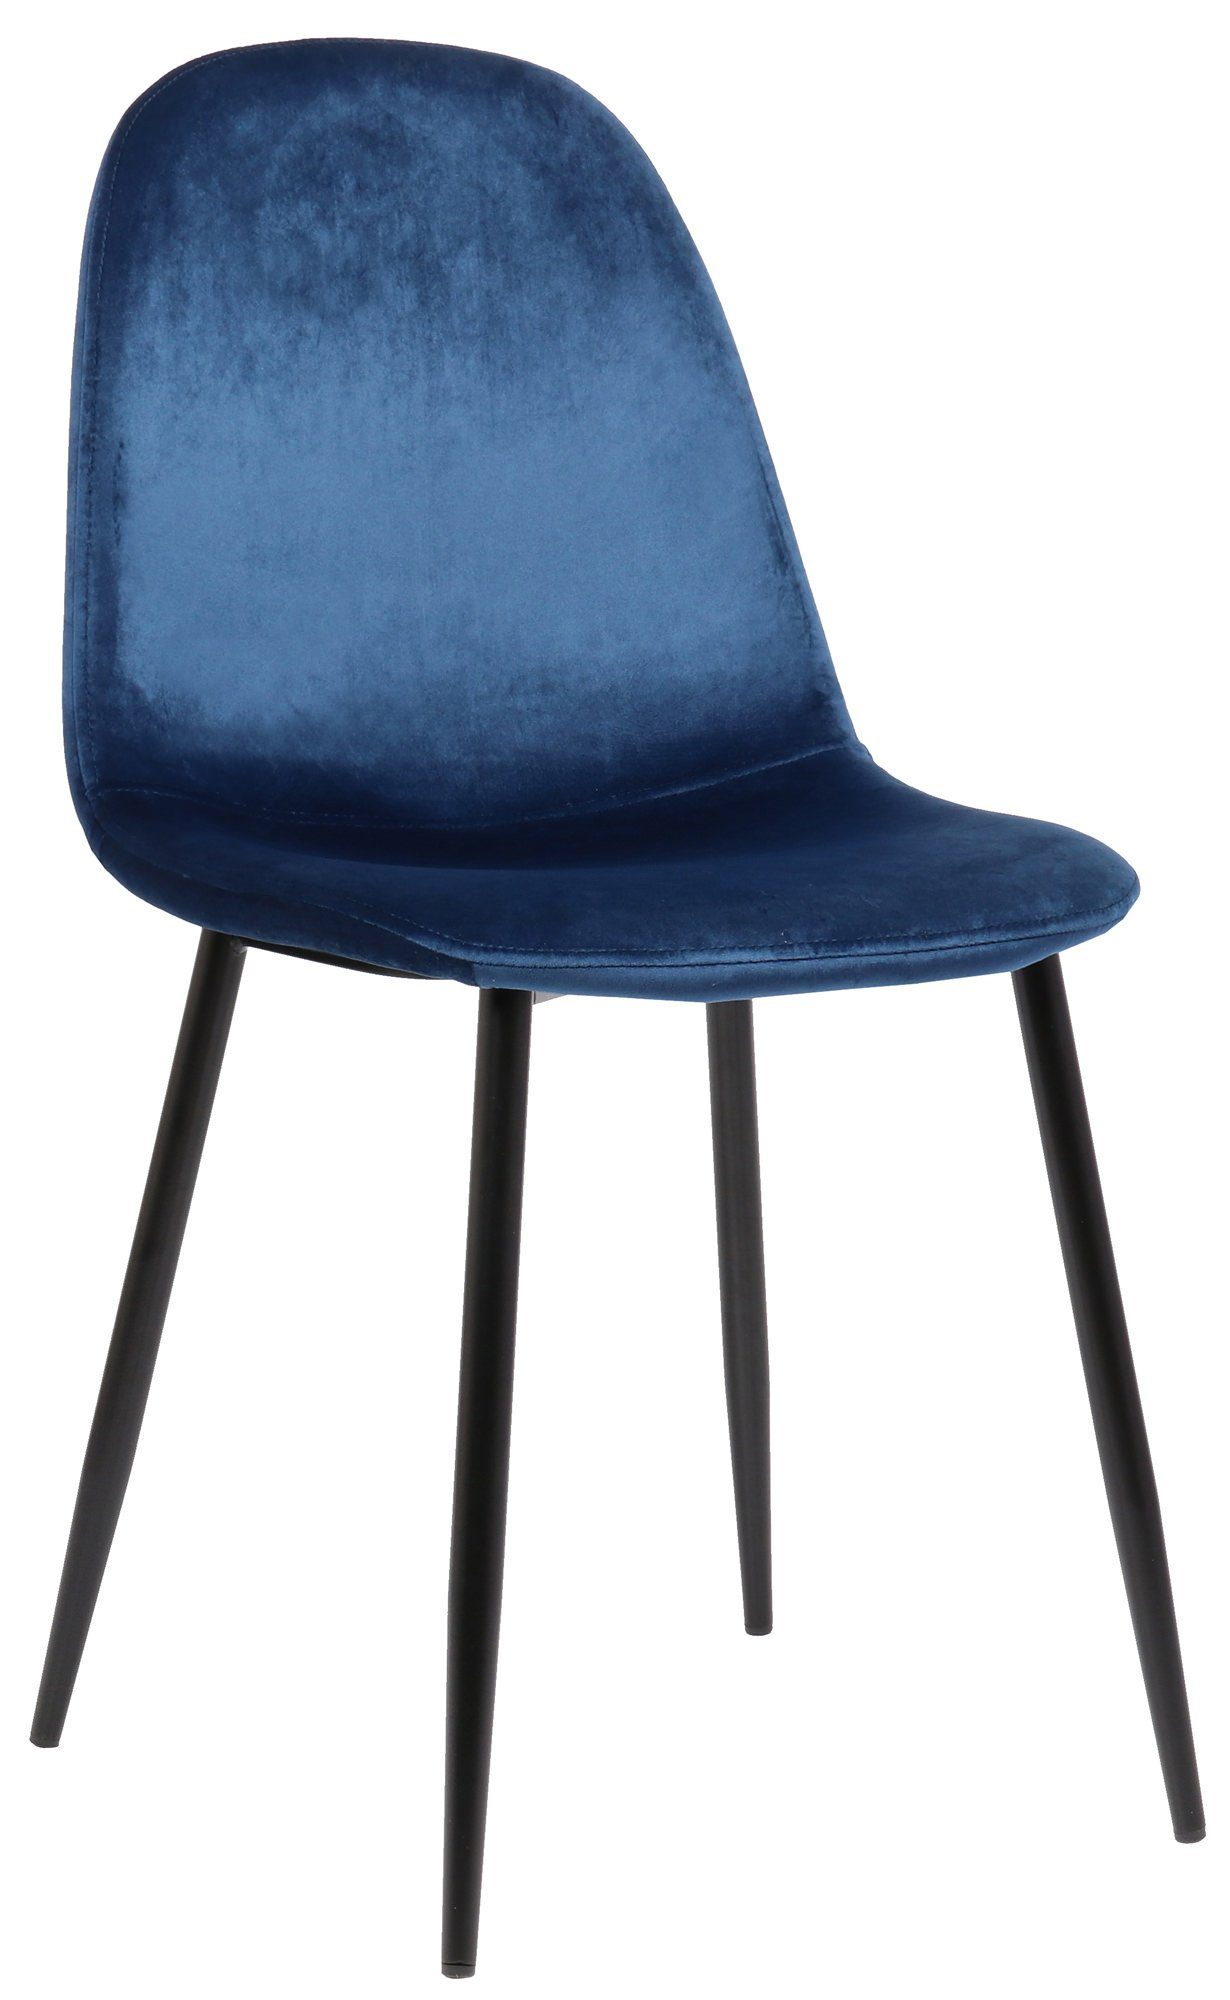 TPFLiving Esszimmerstuhl Naples mit hochwertig gepolsterter Sitzfläche - Konferenzstuhl (Küchenstuhl - Esstischstuhl - Wohnzimmerstuhl - Polsterstuhl), Gestell: Metall schwarz - Sitzfläche: Samt blau